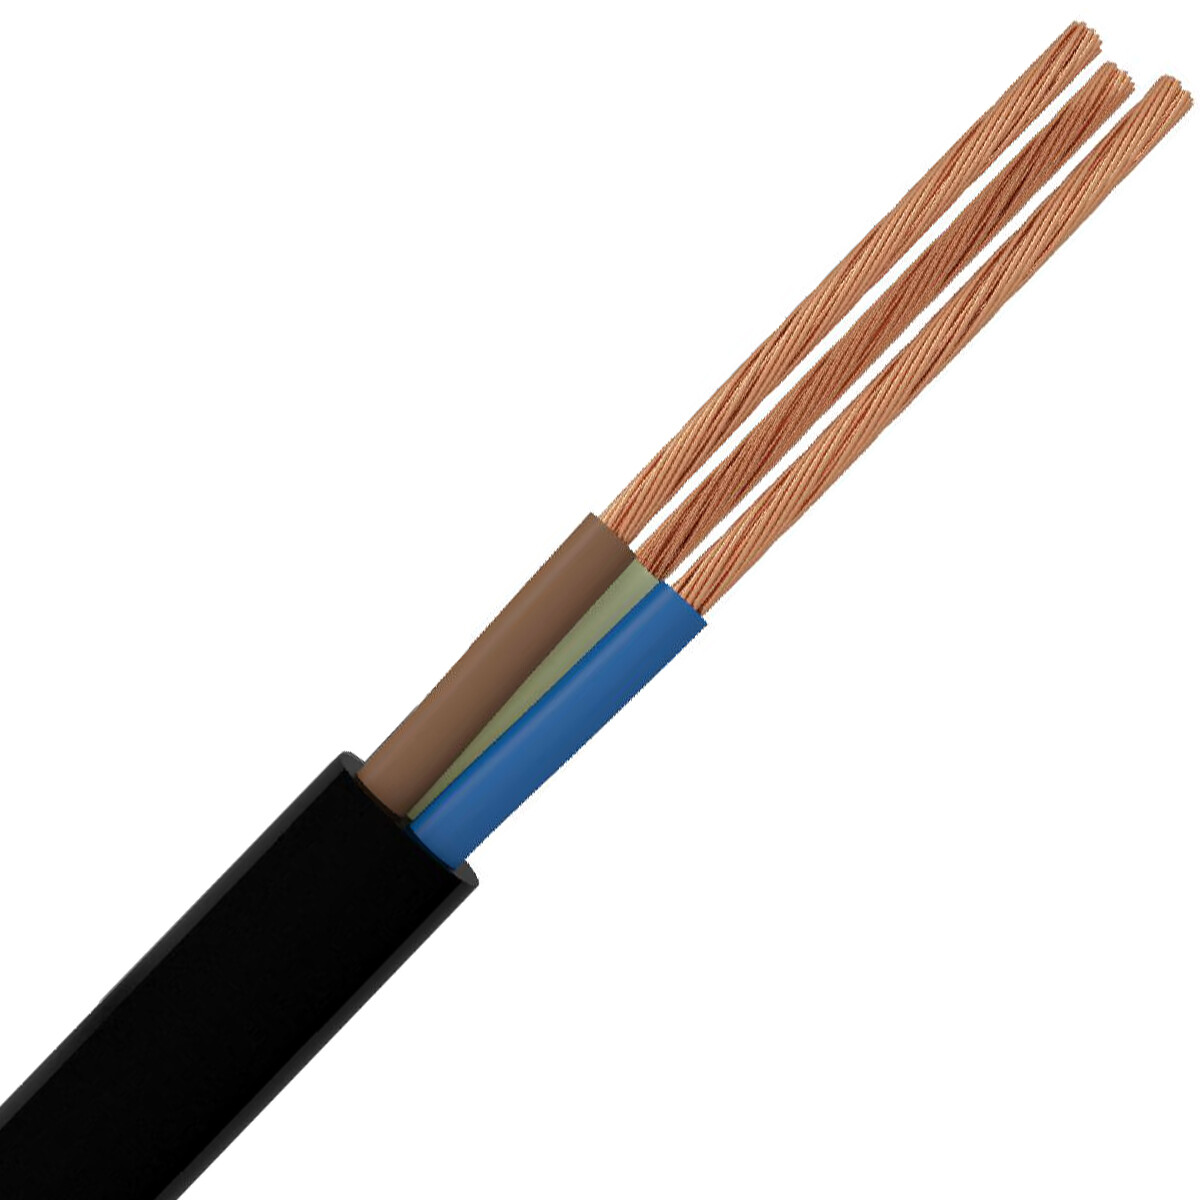 VMVL Kabel - Stroomkabel - 3x2.5mm - 3 Aderig - 50 Meter - H05VV-F - Zwart